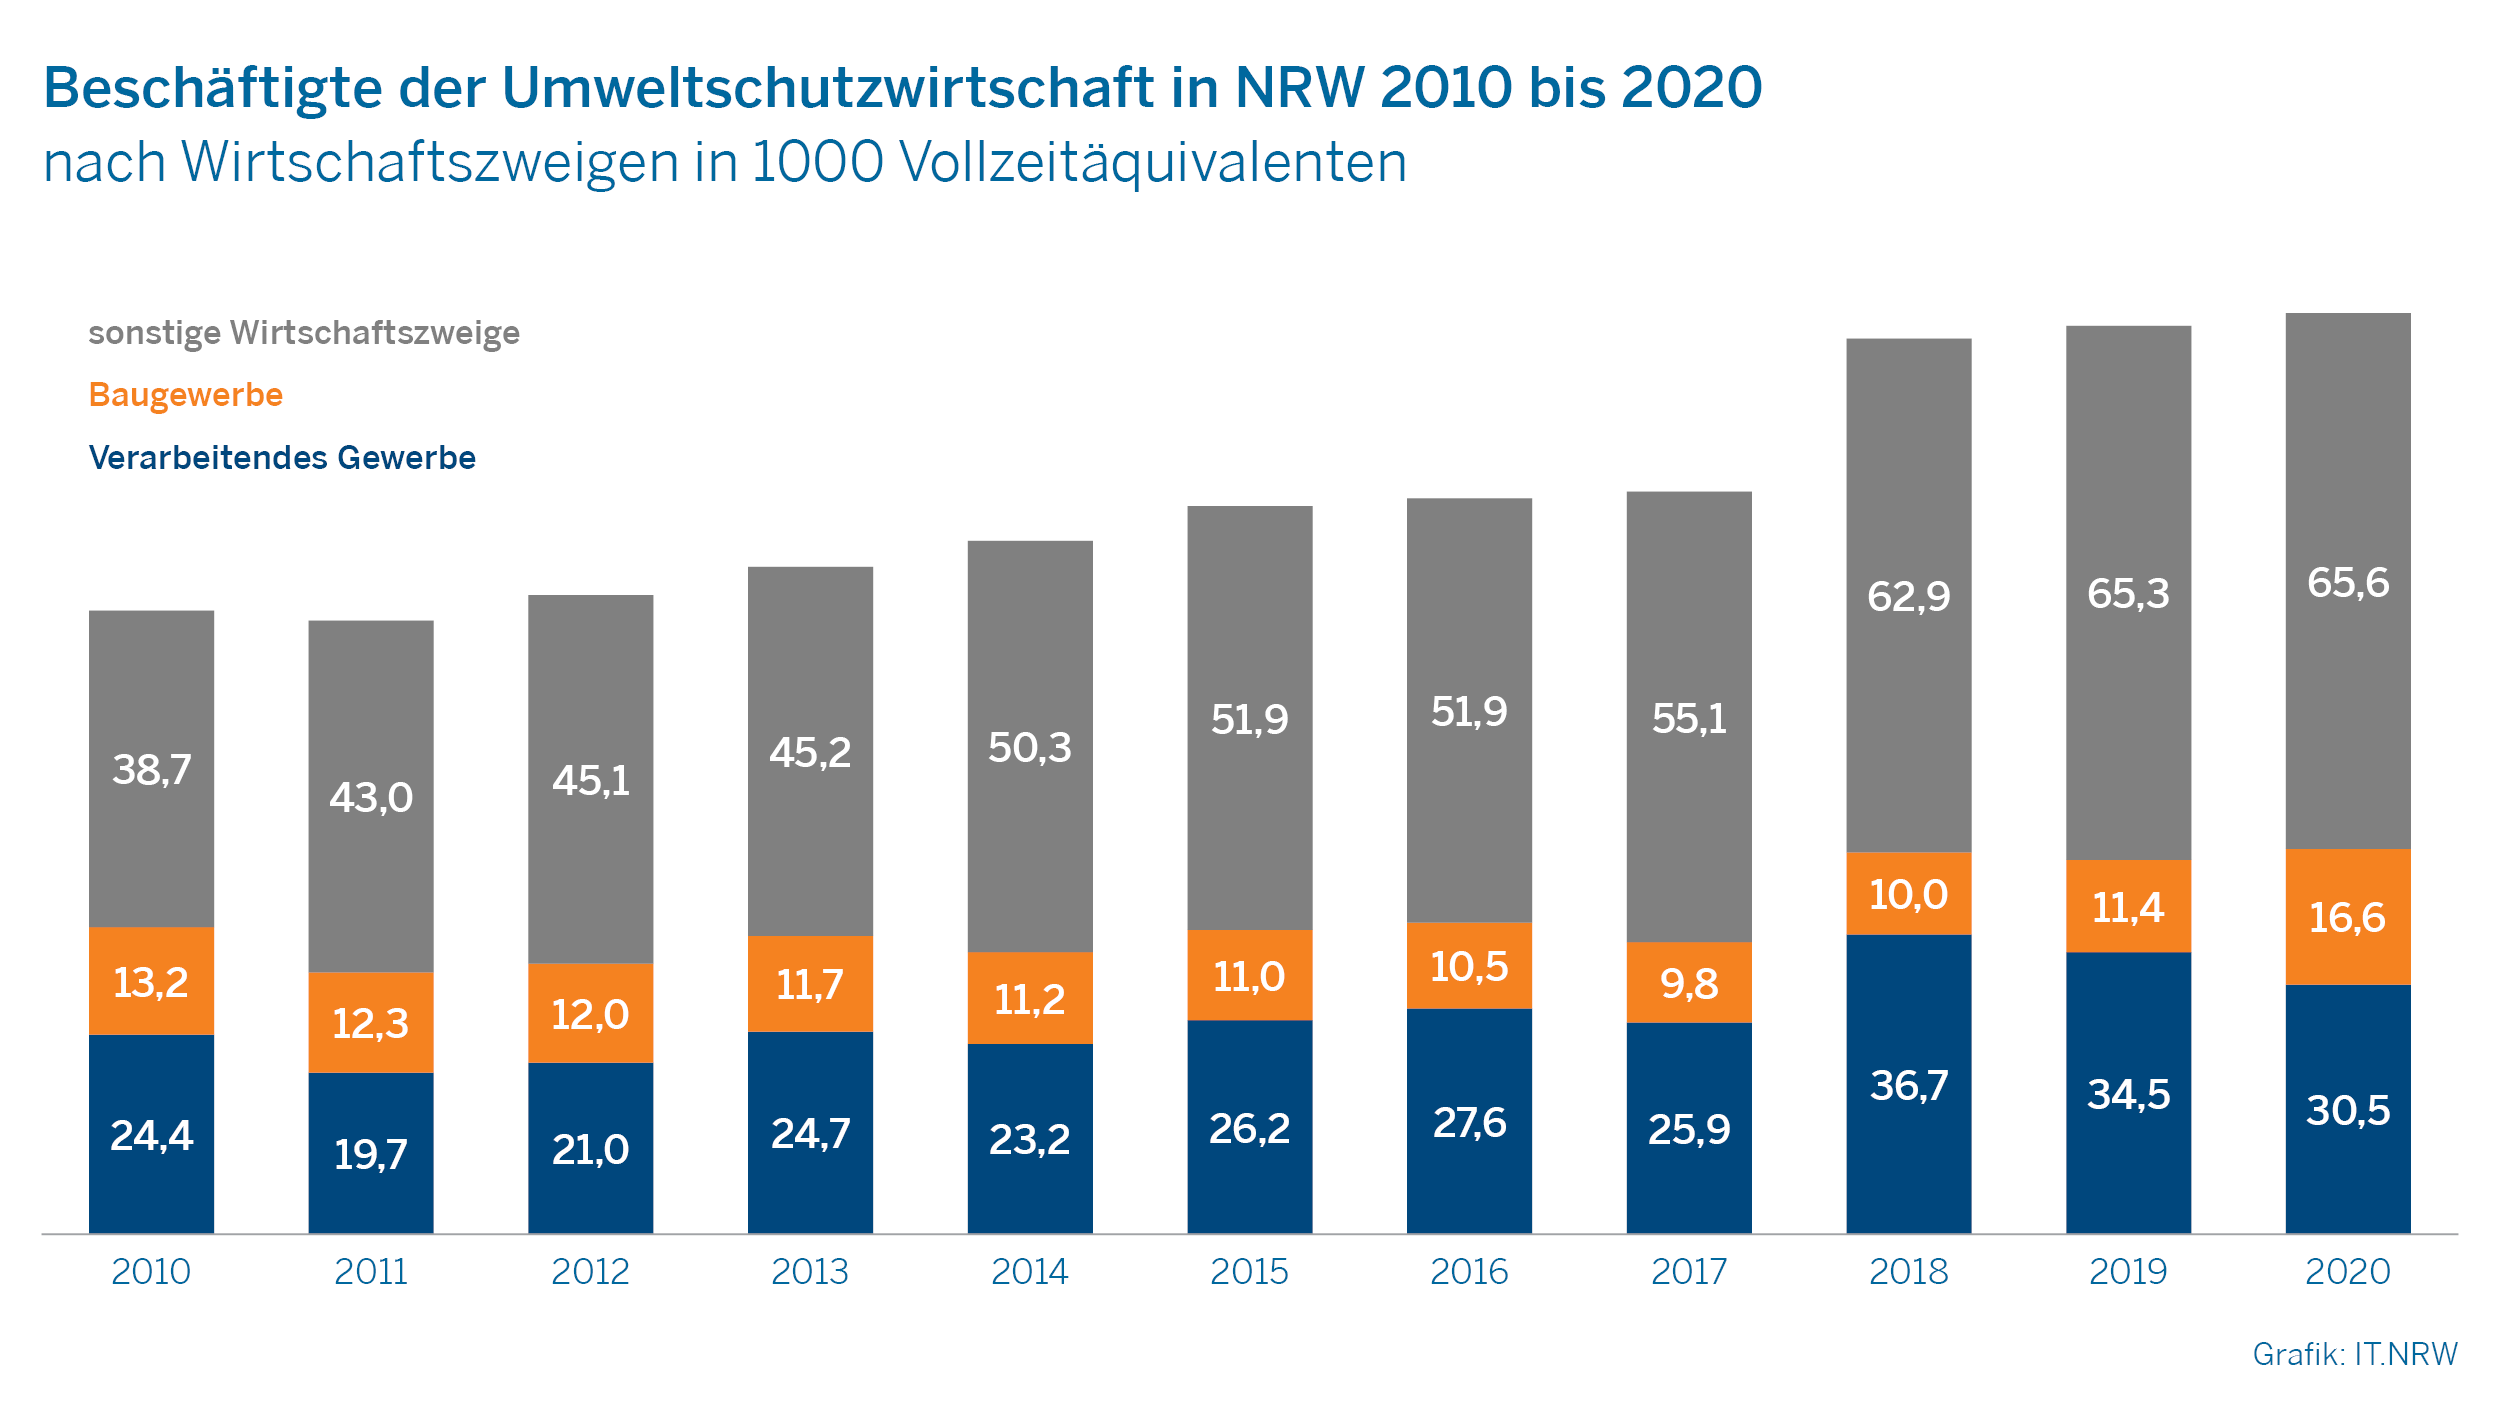 Beschäftigte der Umweltwirtschaft in NRW 2010 bis 2020